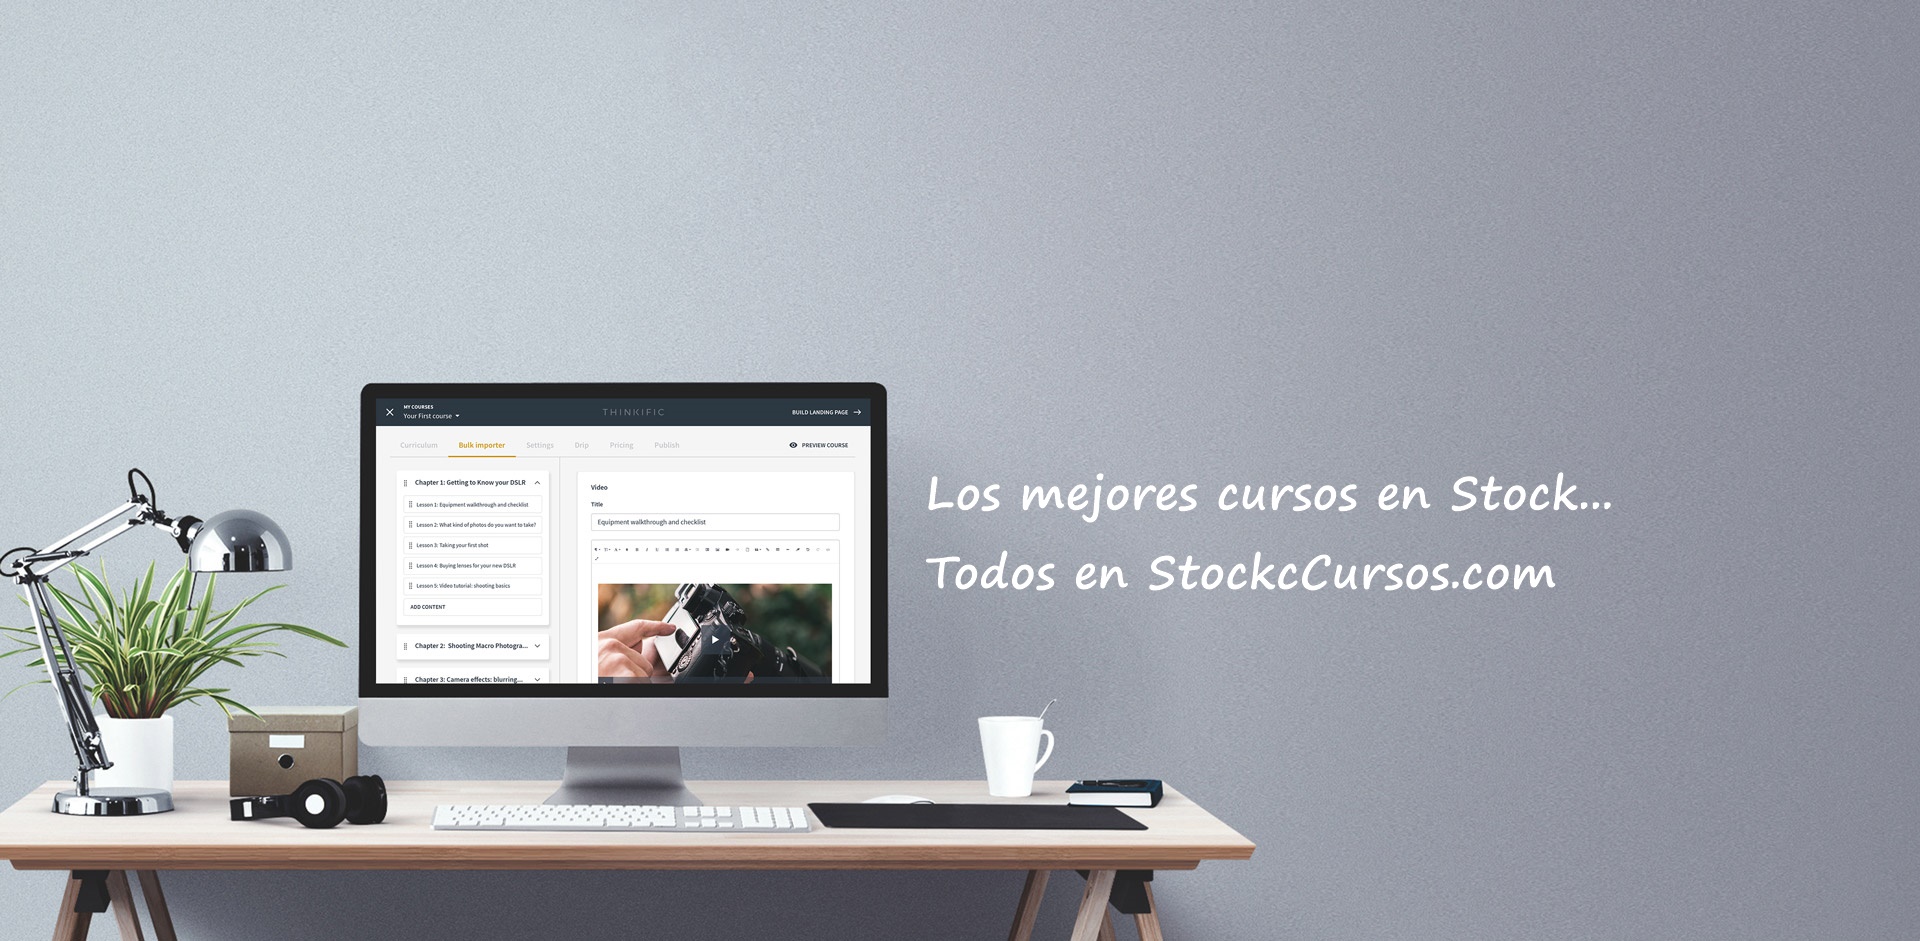 (c) Stockcursos.com